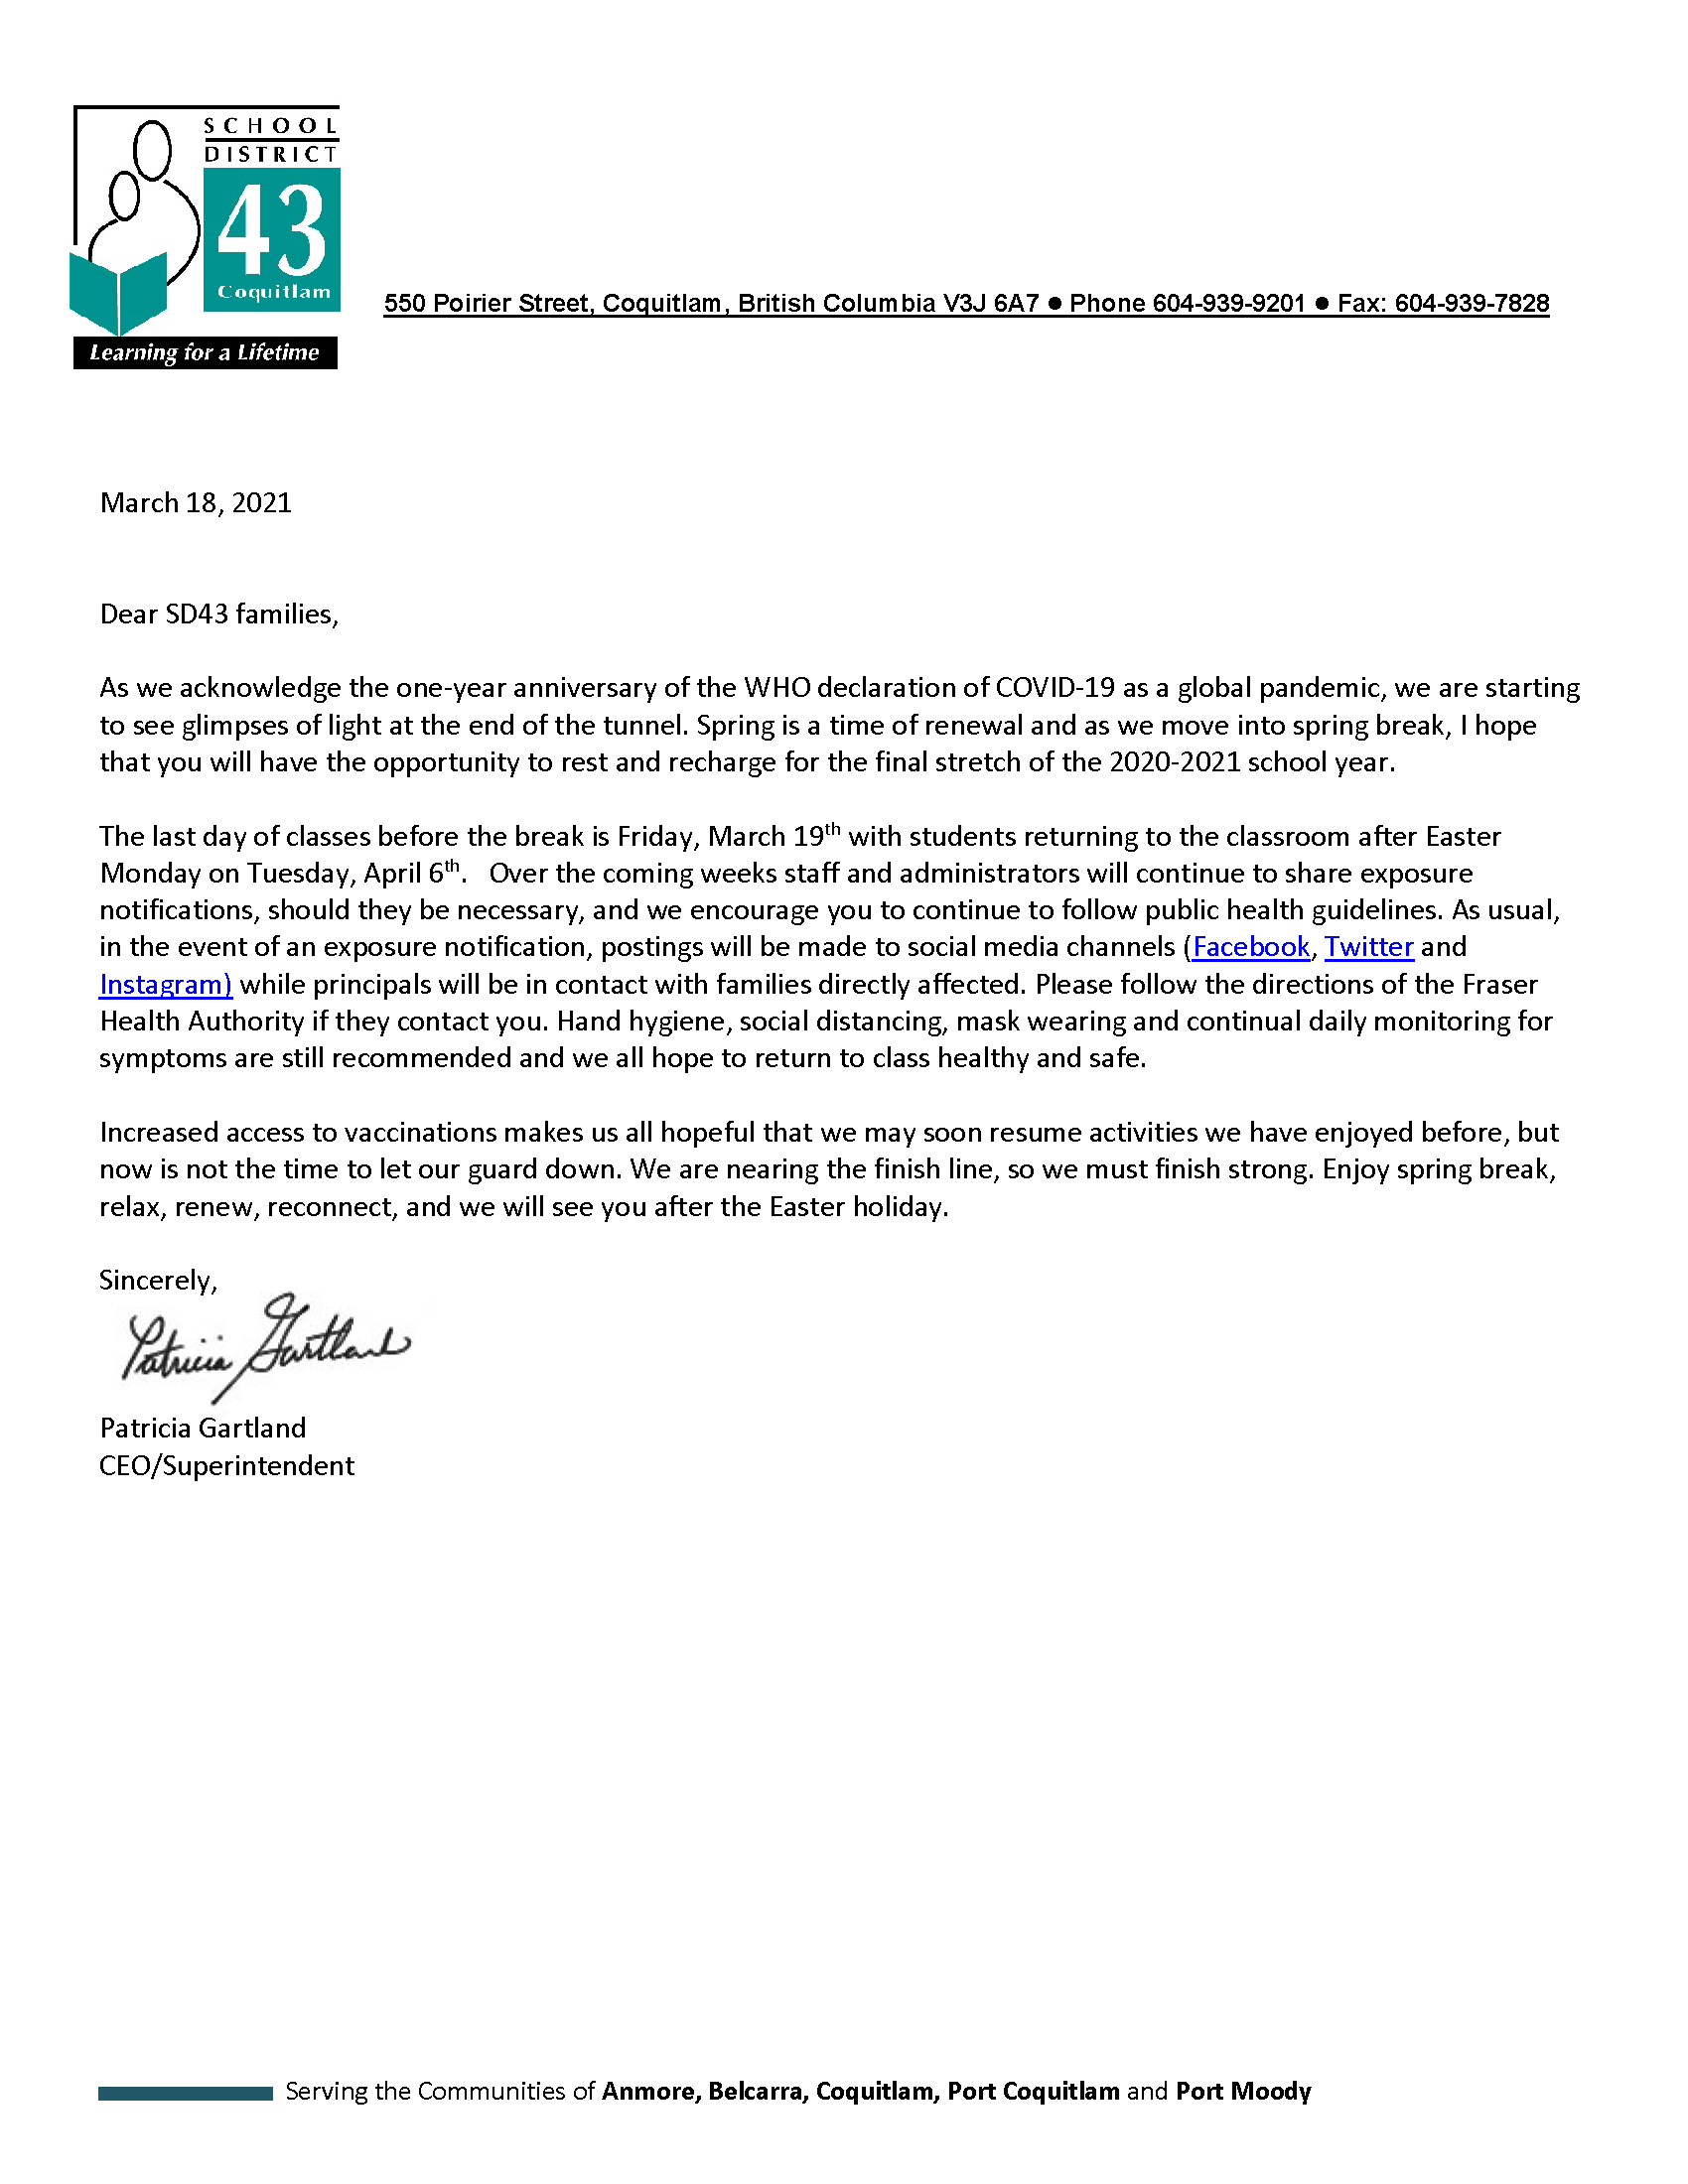 Superintendents letter re Spring Break 03-18-2021.png